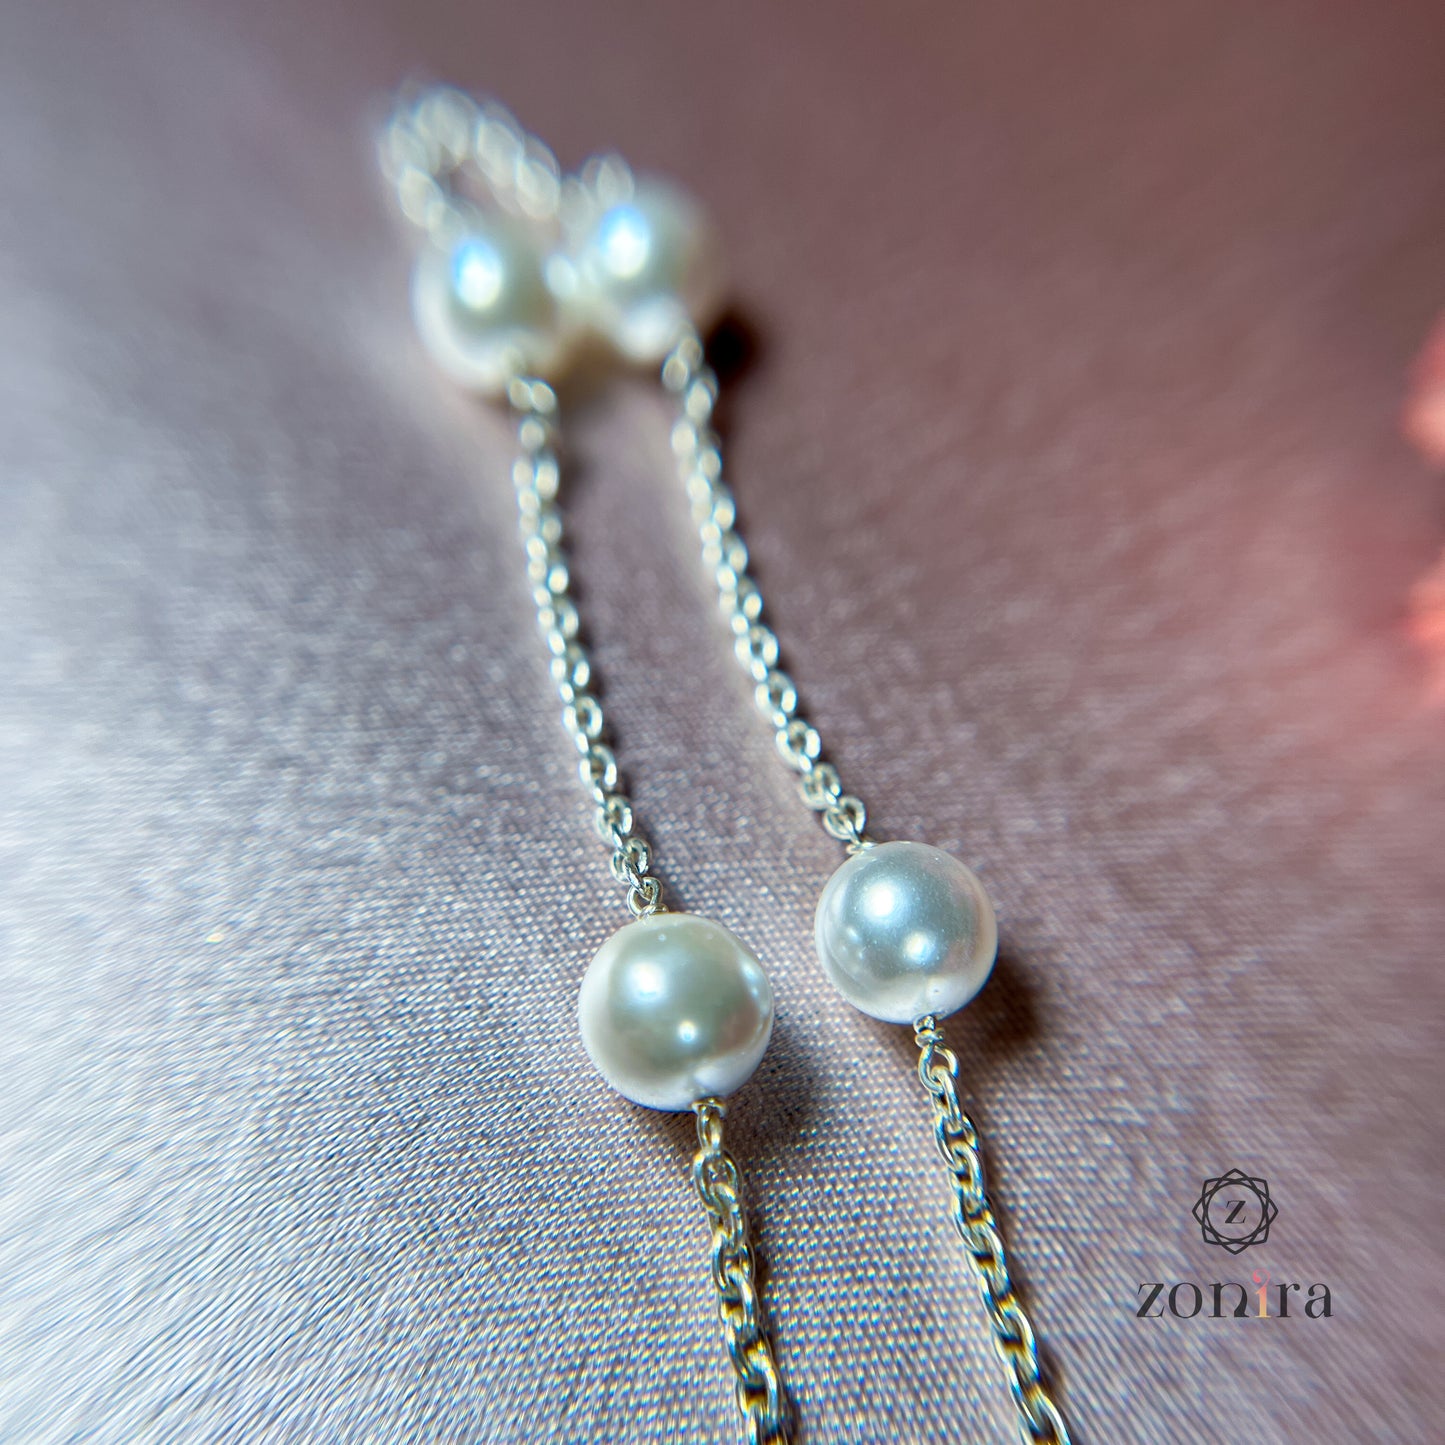 Glory Silver Bracelet - Pearls